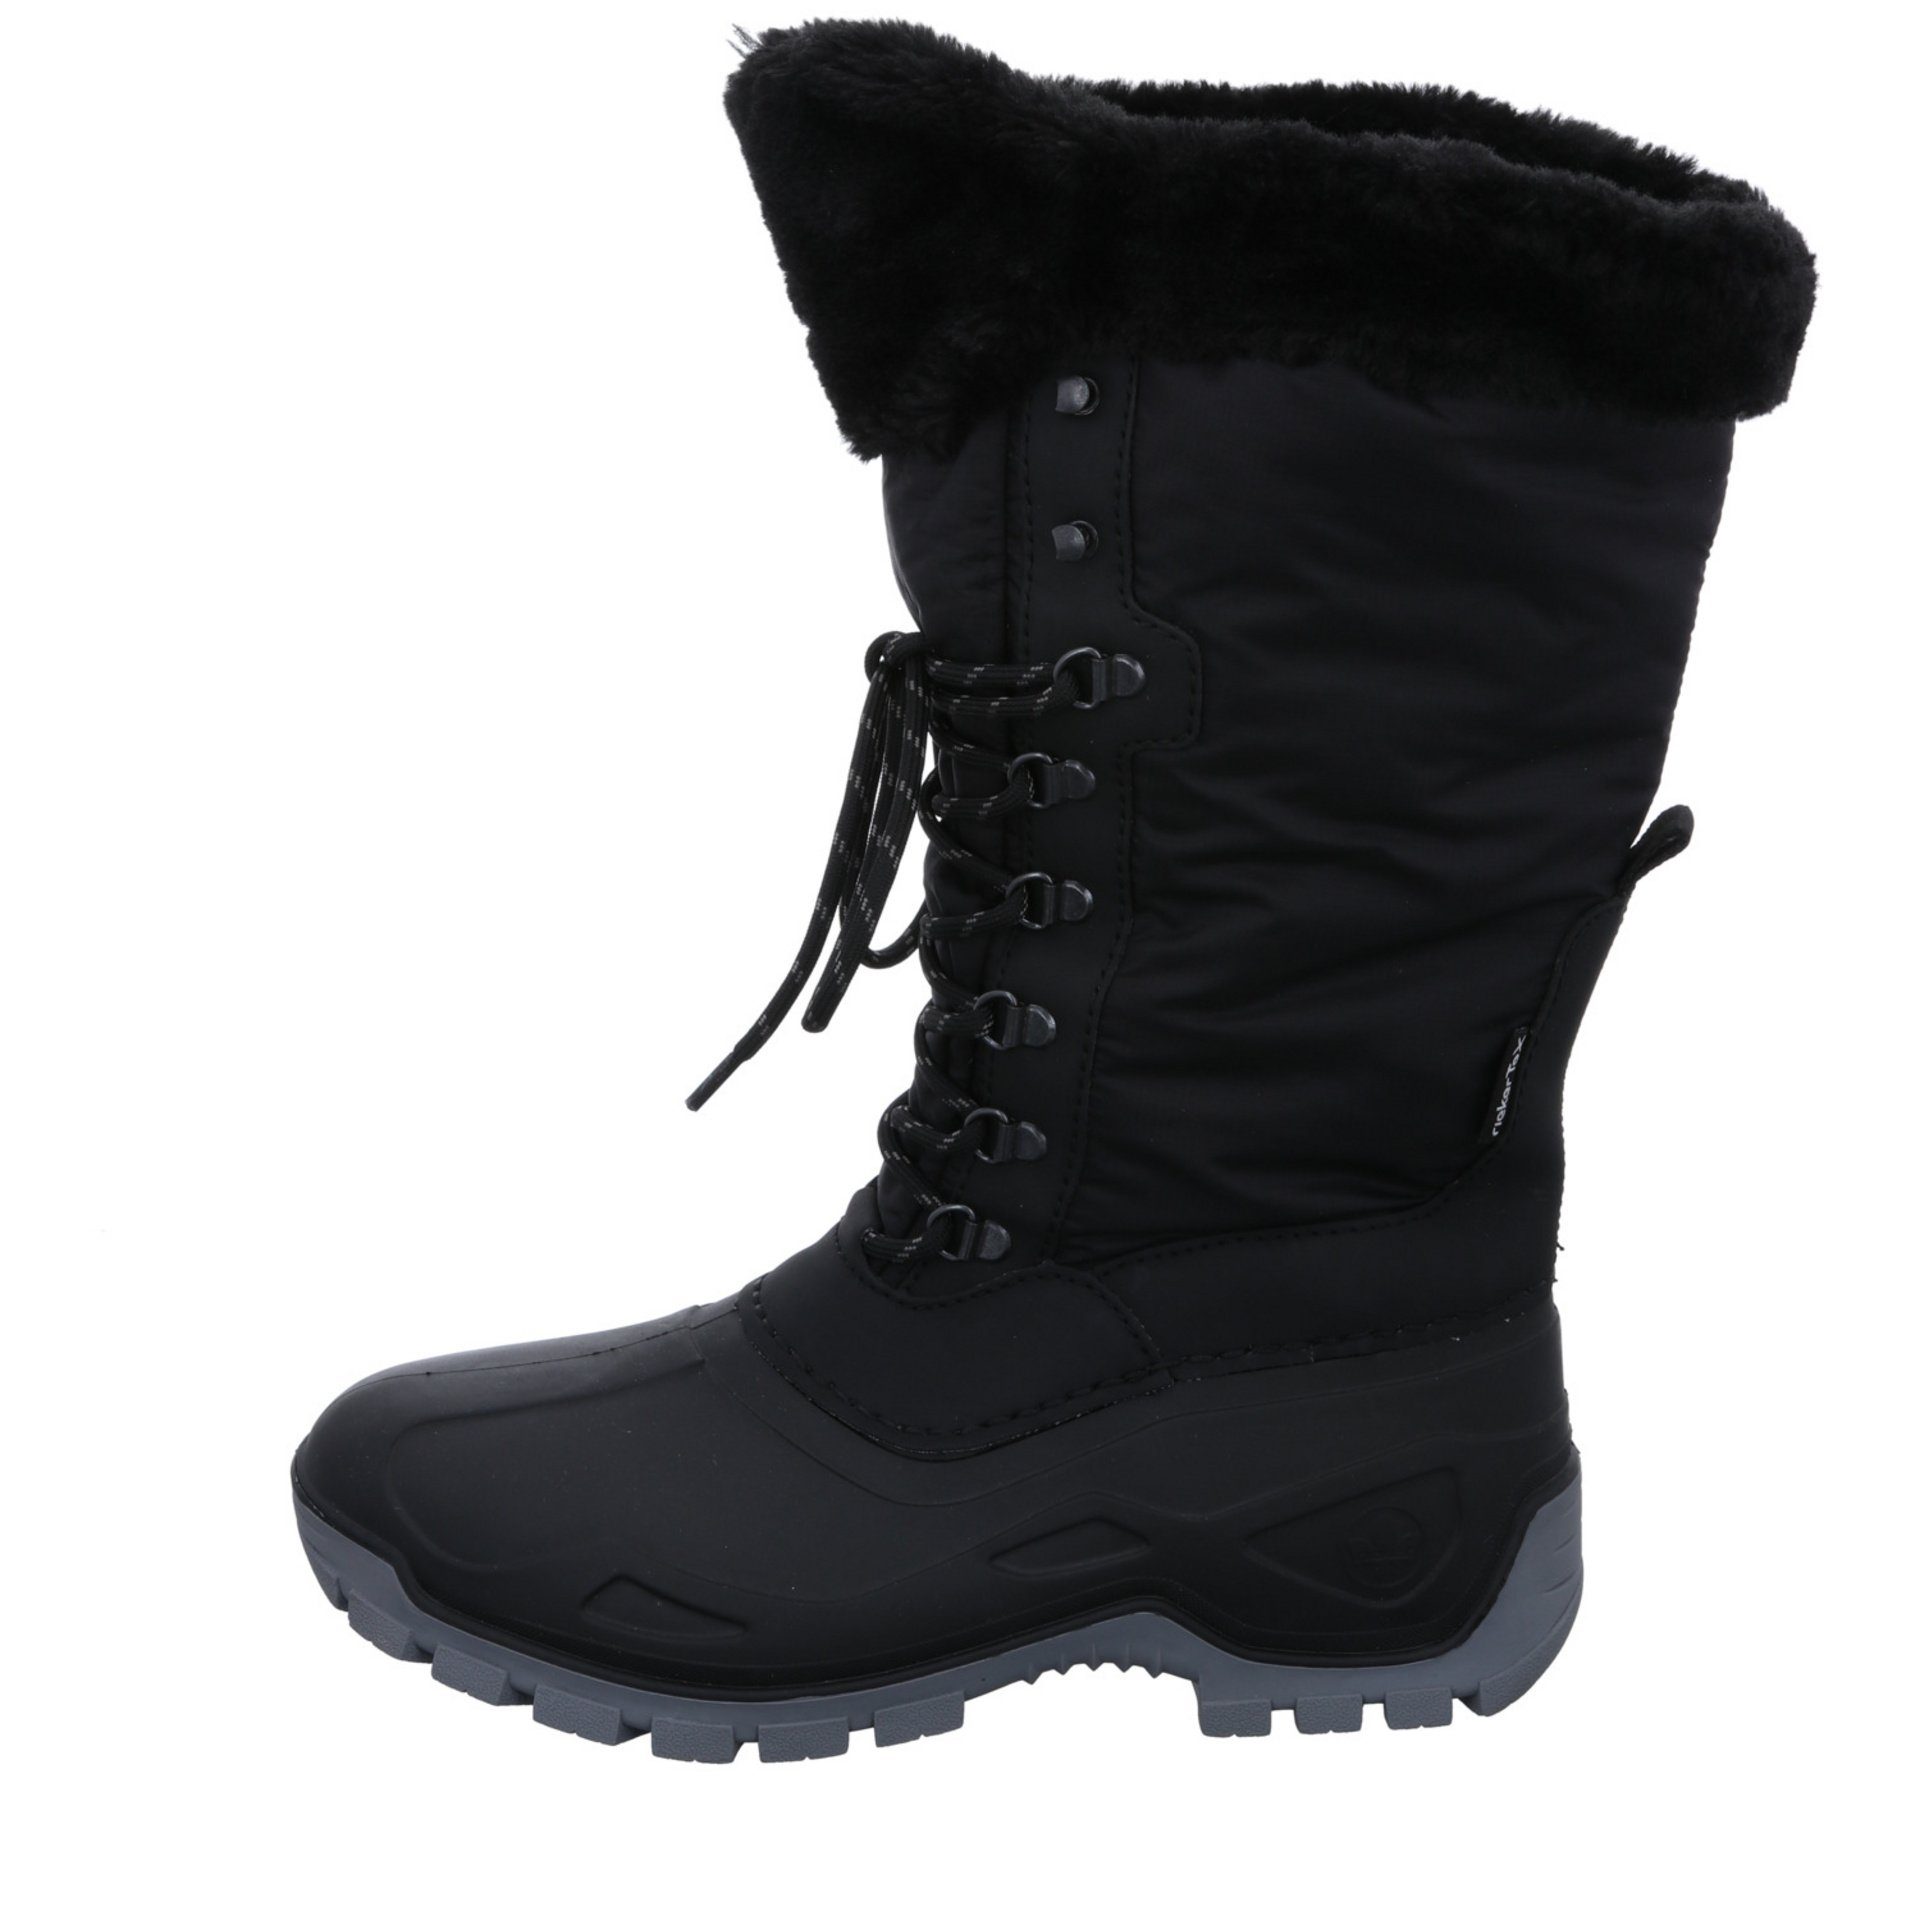 Freizeit Schuhe Snowboots Damen schwarz/schwarz/nero Boots Winter Synthetikkombination Rieker Snowboots